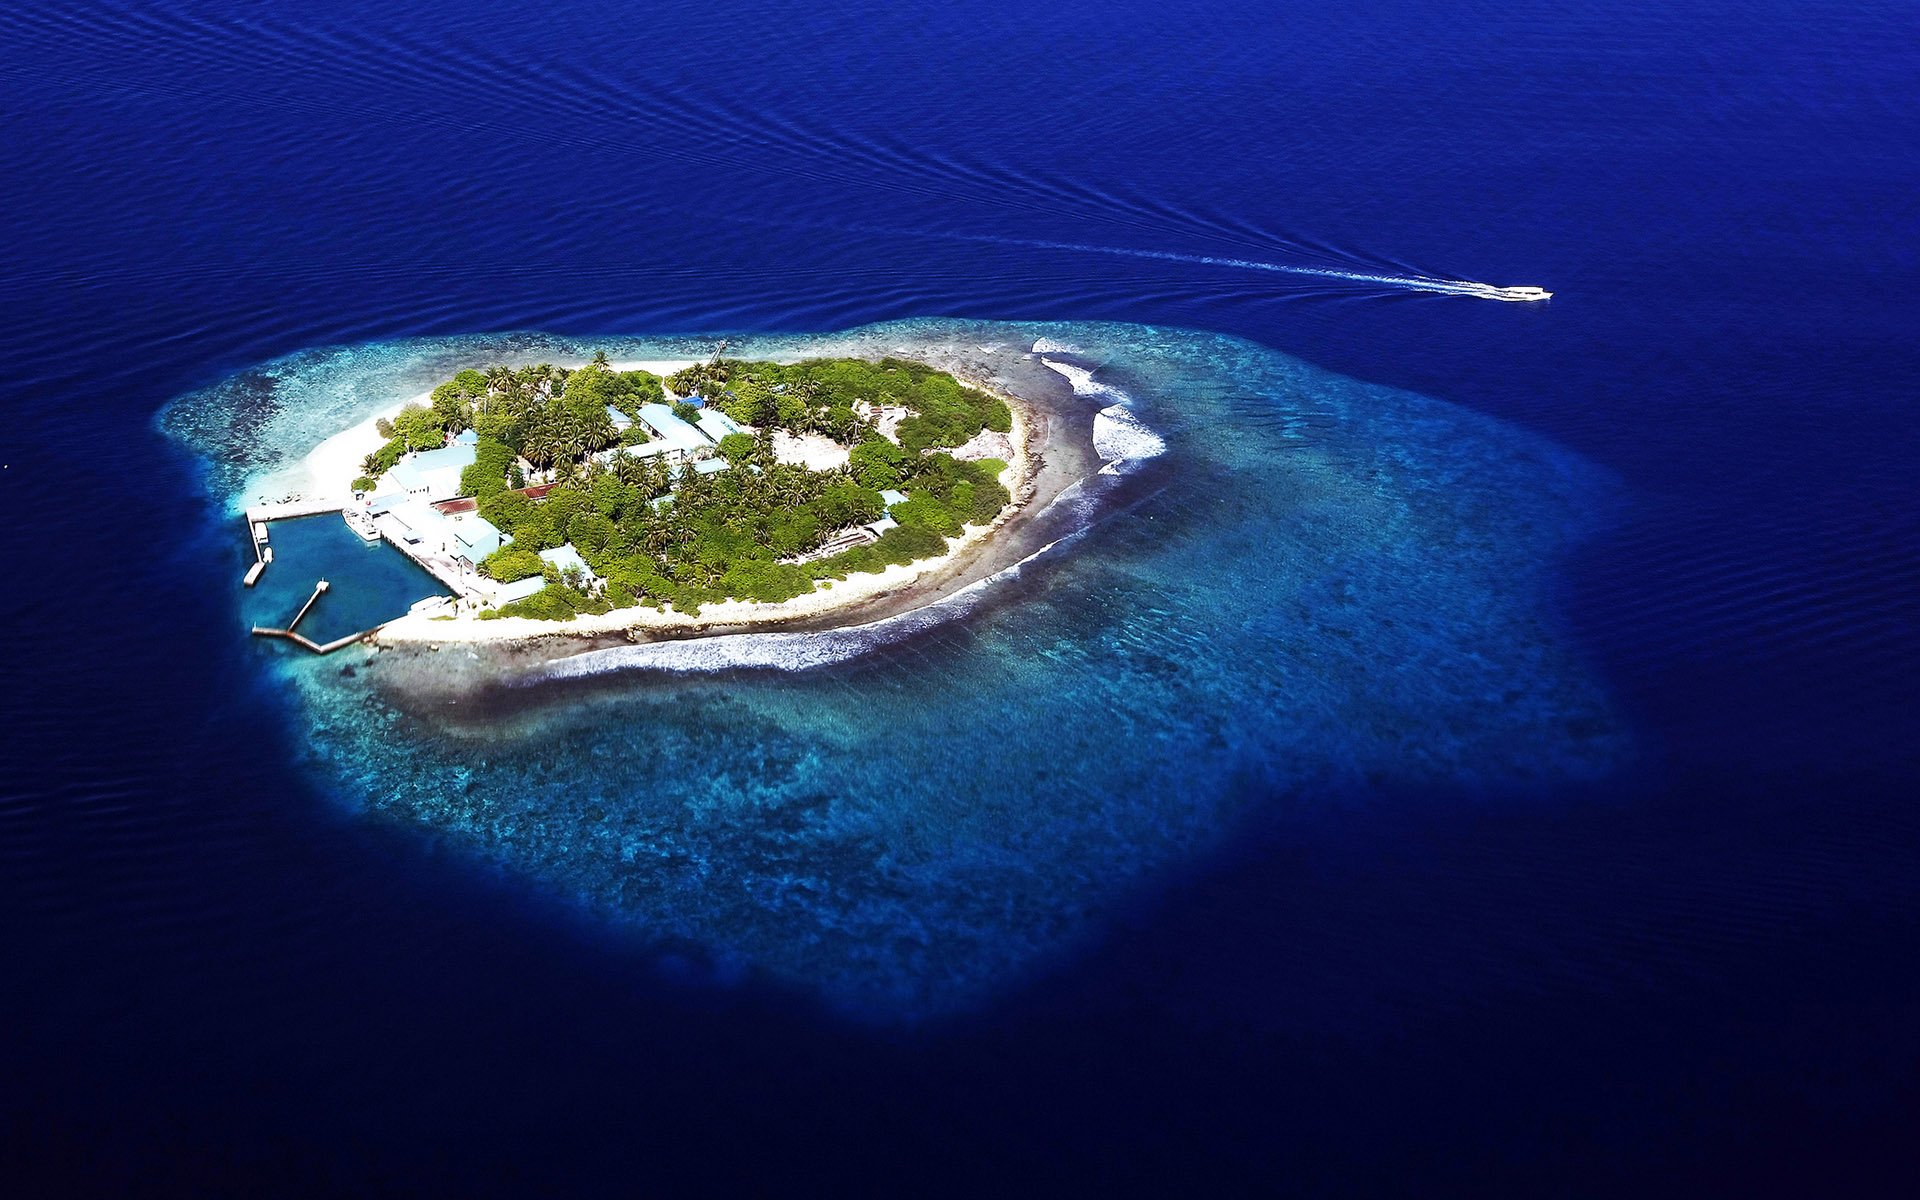 Круг архипелаг. Maldivian Archipelago / Мальдивский архипелаг. Мальдивы Чагос. Мальдивы архипелаг вид сверху. Архипелаг Фиджи необитаемые острова.